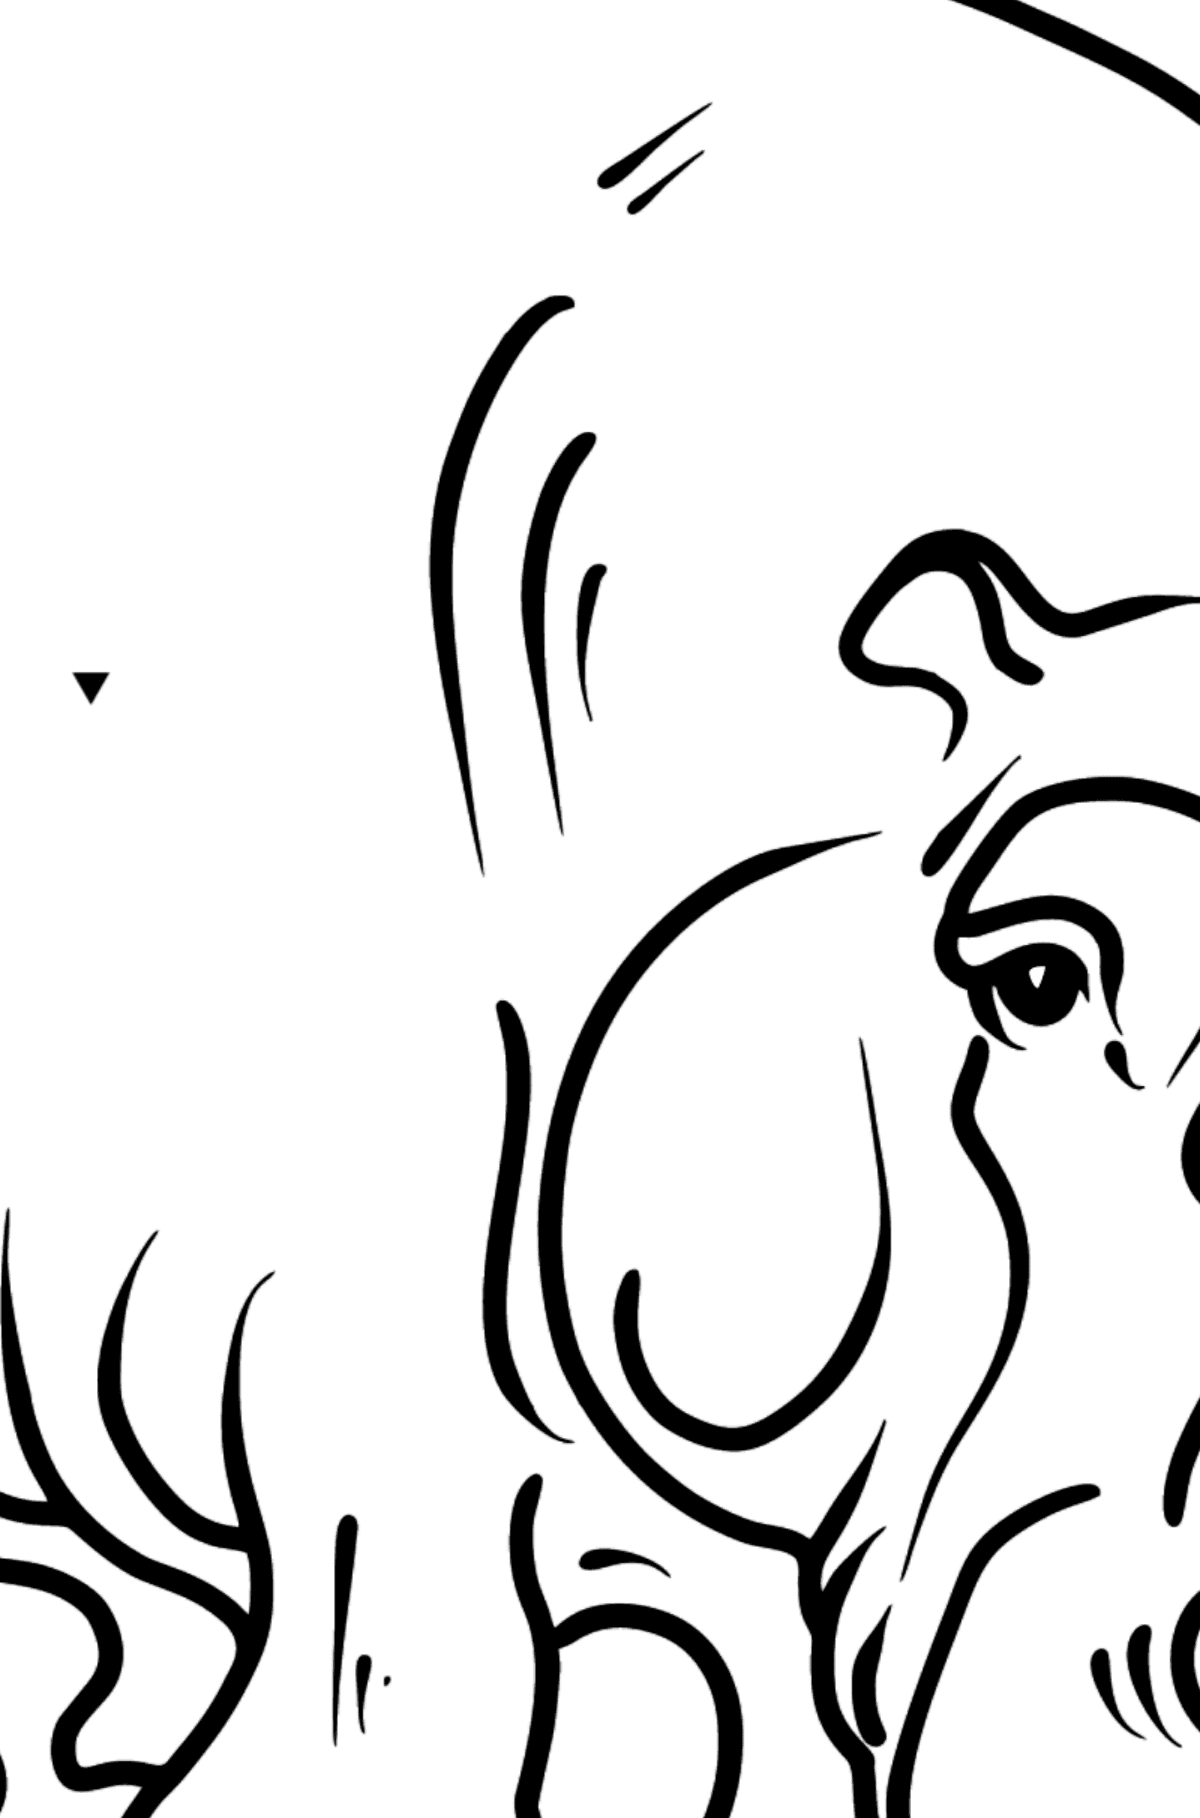 Dibujo de hipopótamo para colorear - Colorear por Símbolos para Niños